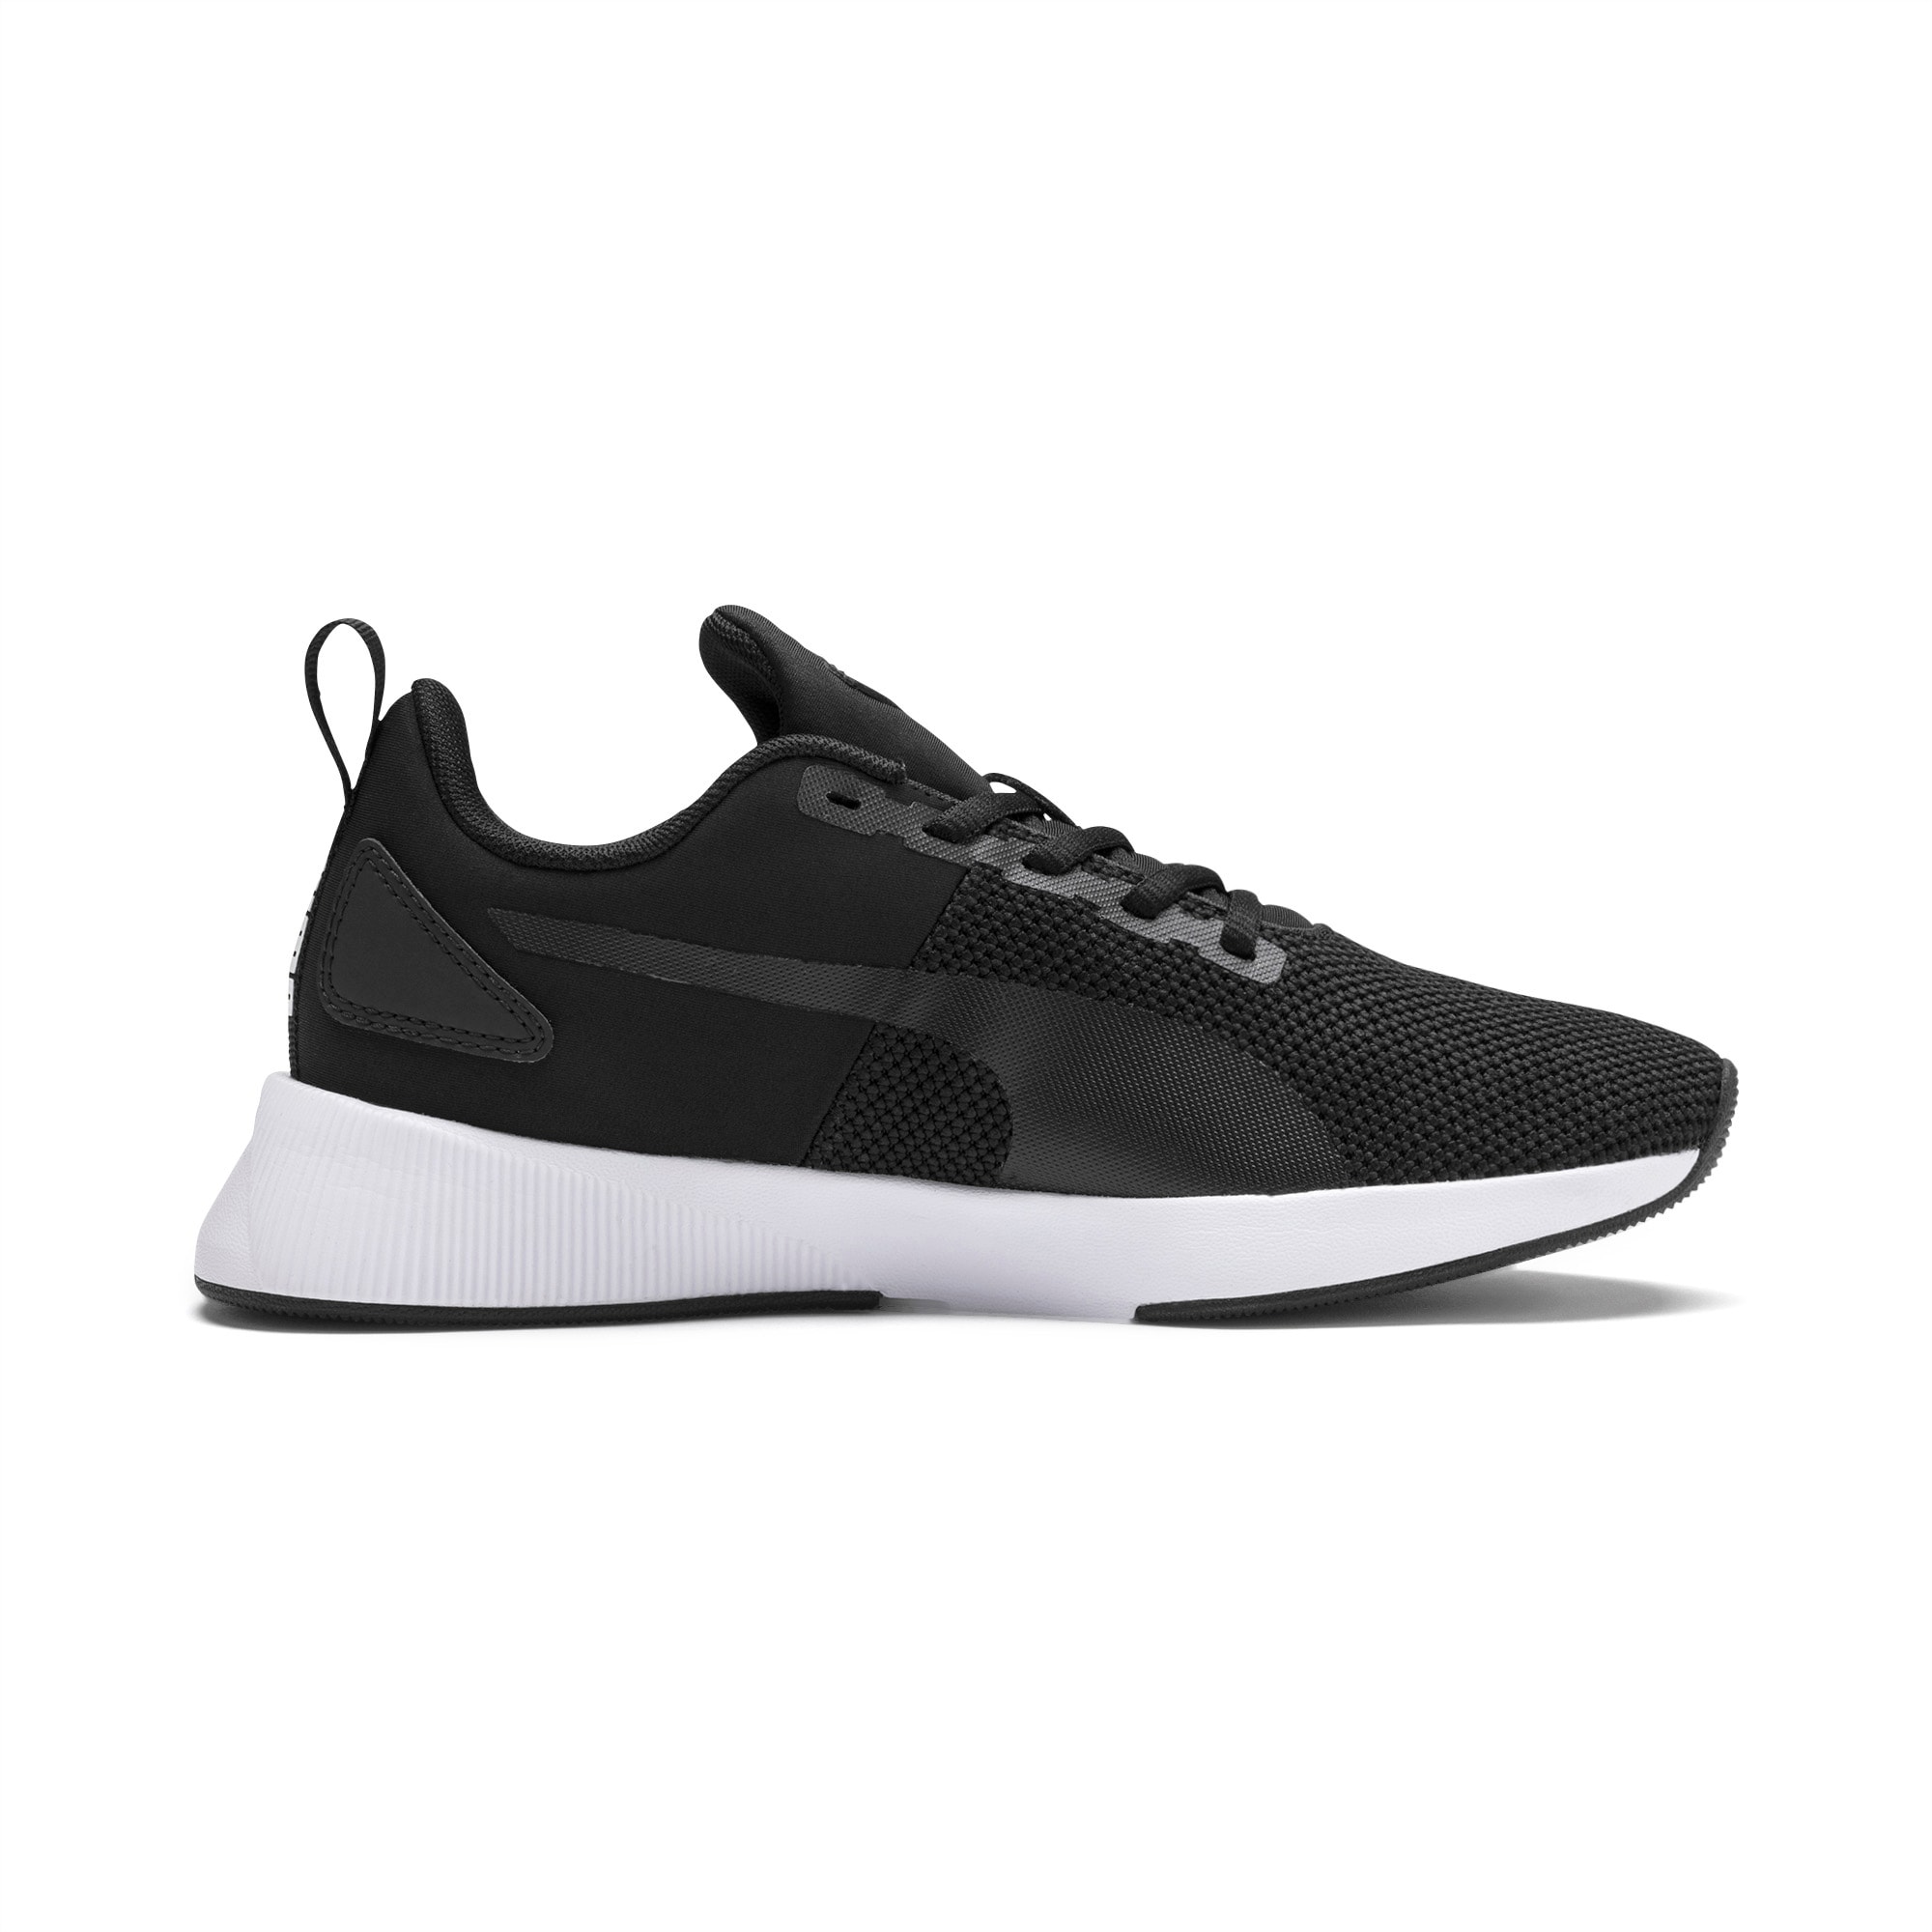 PUMA Flyer Runner Sneakers Teenager Schuhe Für Kinder, Schwarz/Weiß, Größe: 37, Schuhe